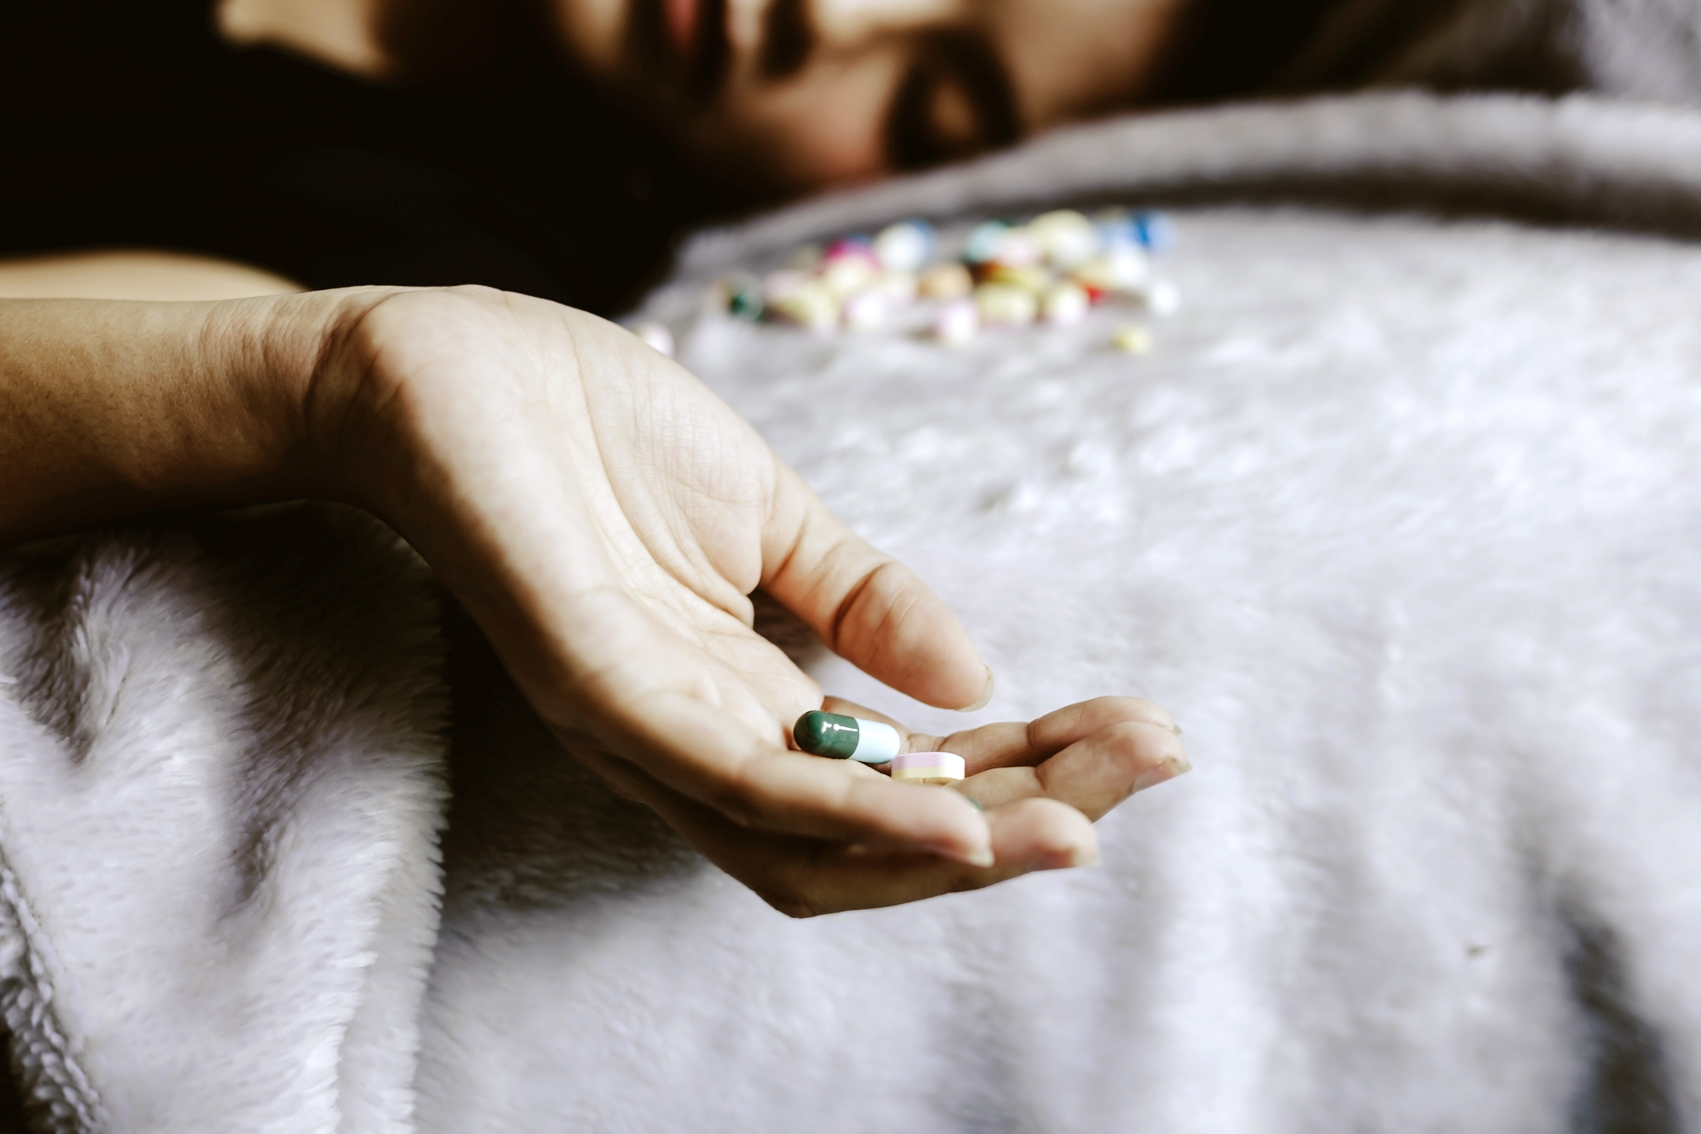 Trẻ tự mua thuốc ngủ sử dụng dễ gây ra các bệnh lý về tâm thần, thậm chí tử vong nếu dùng quá liều - ẢNH MINH HỌA